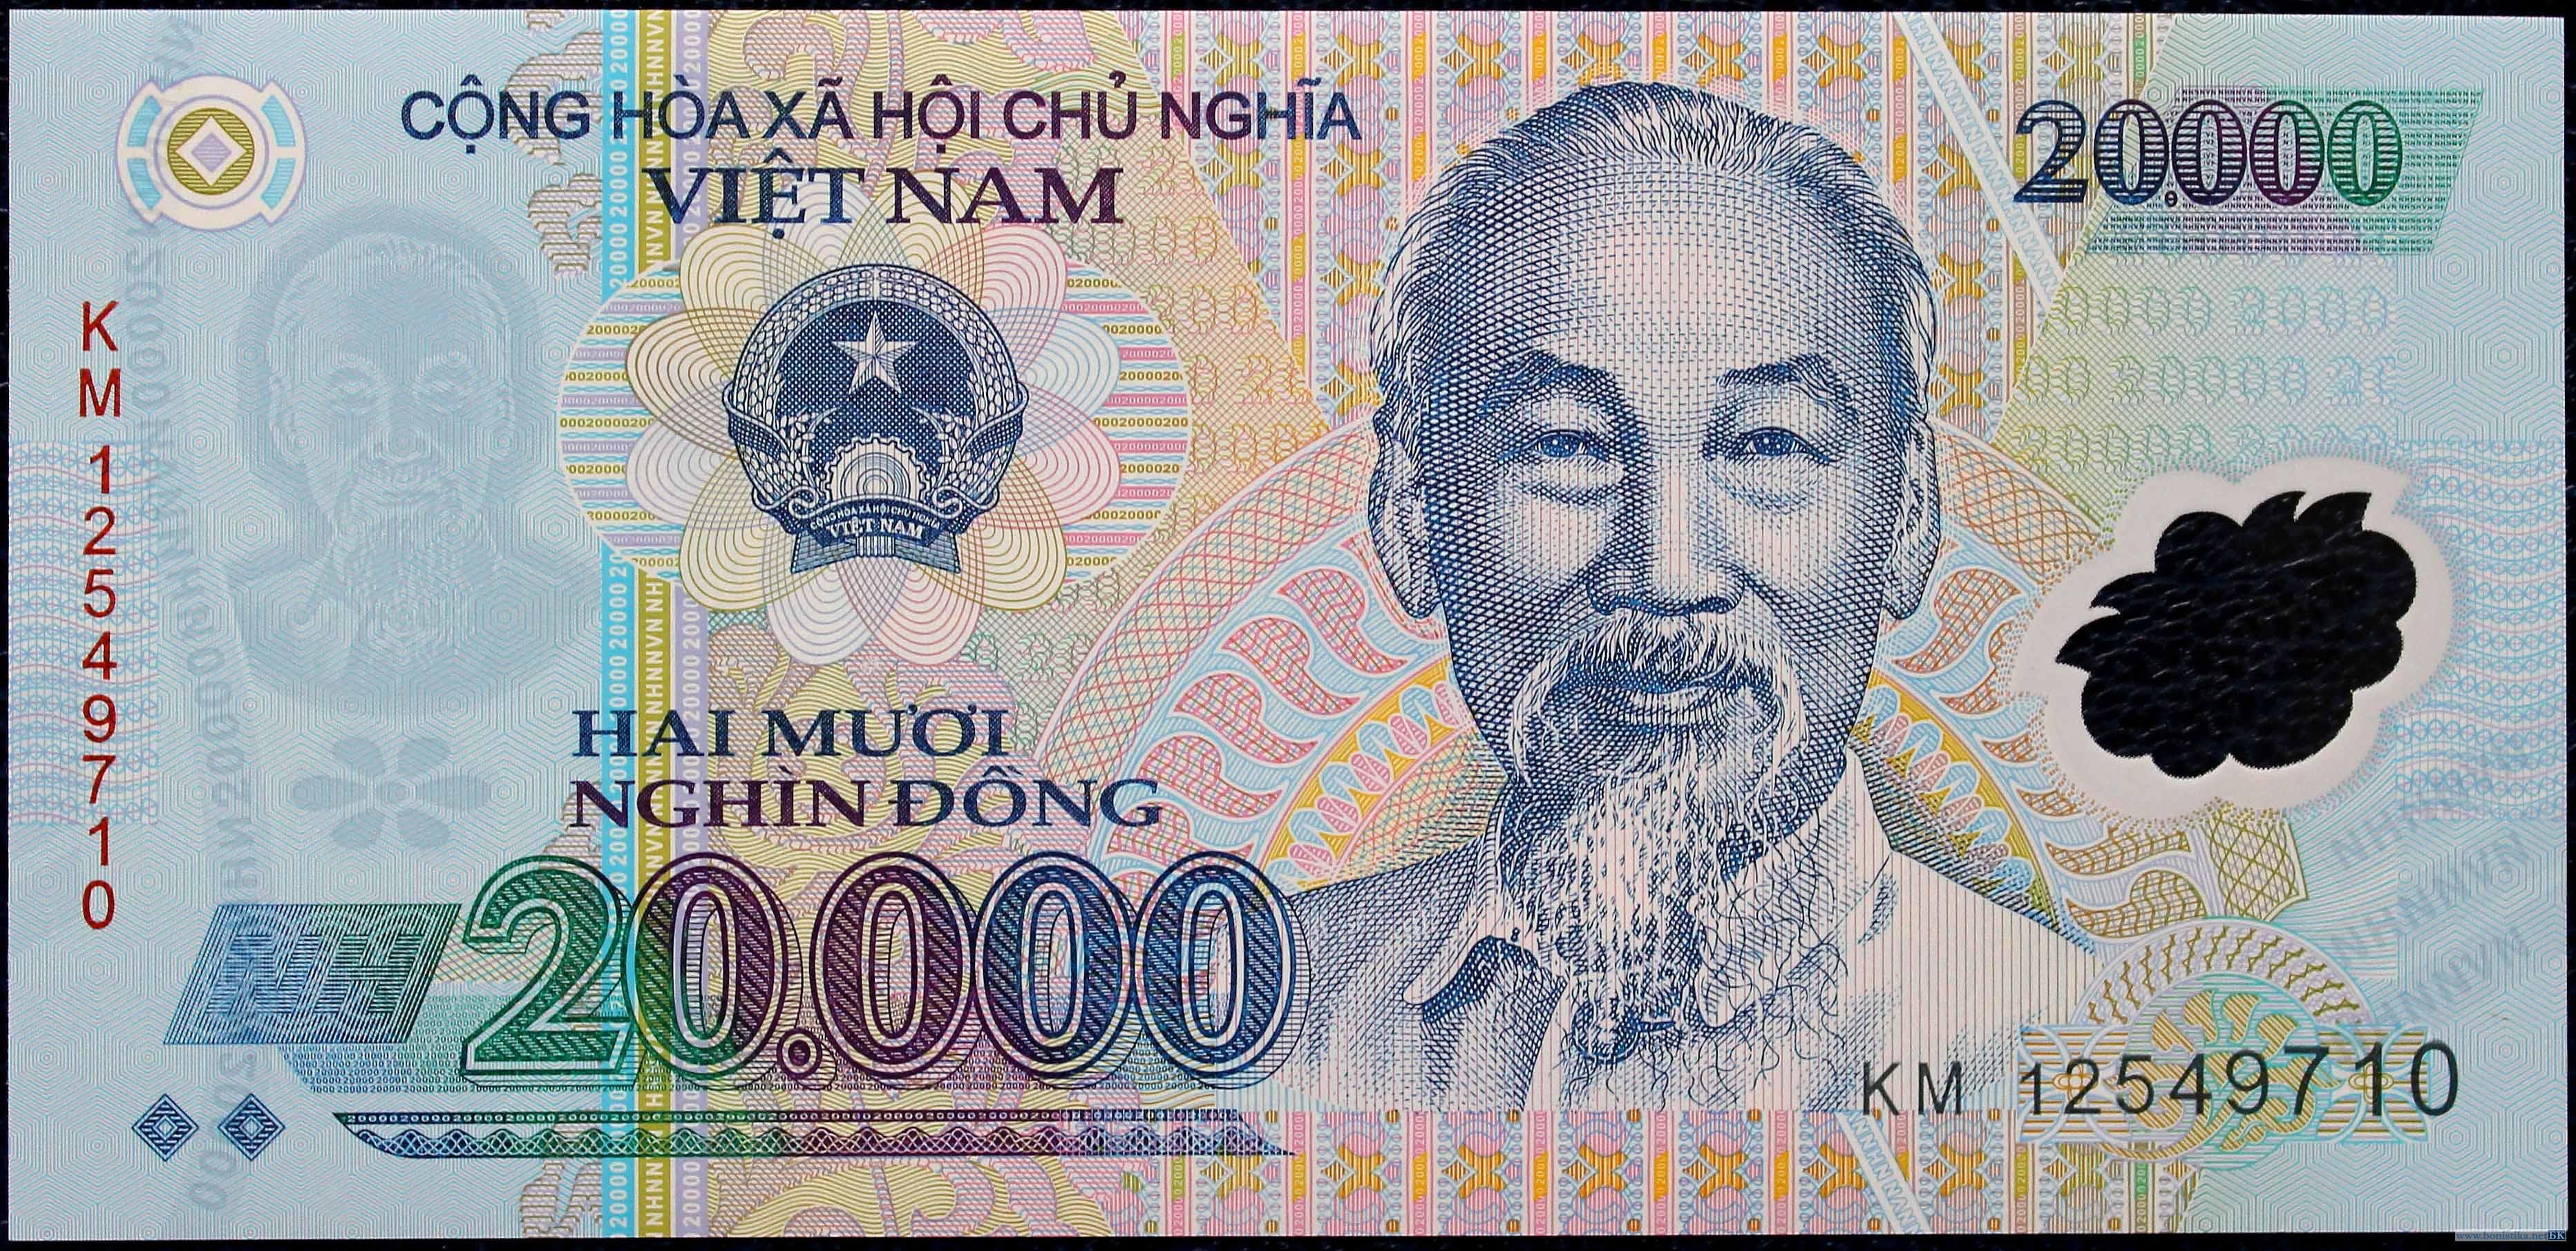 Цены во вьетнаме 2015